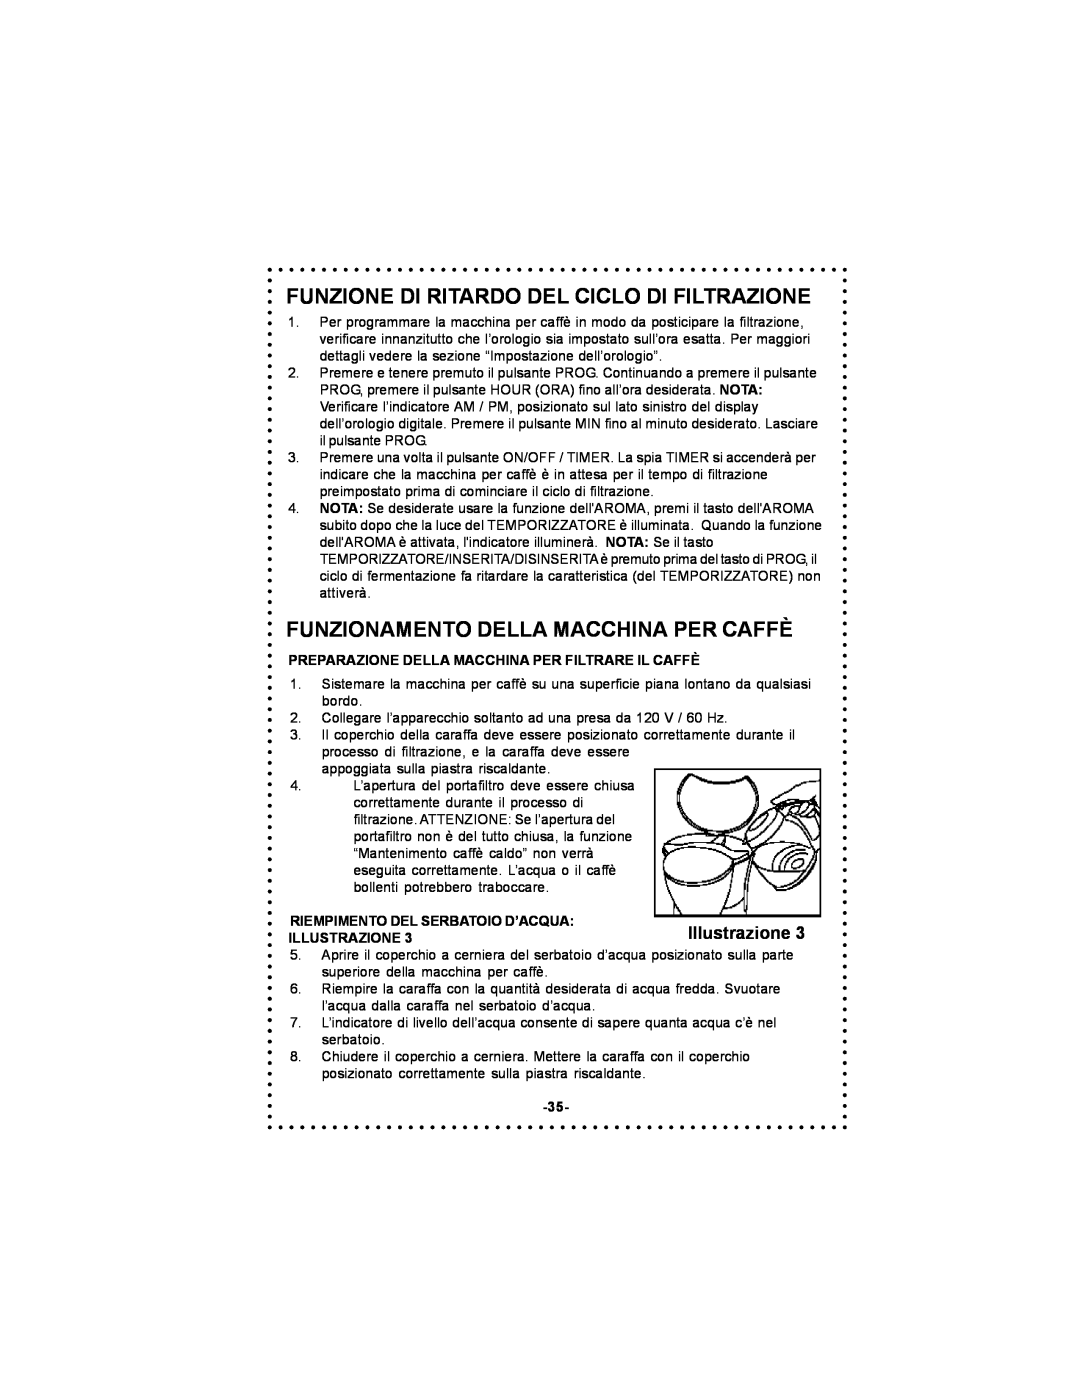 DeLonghi DC59TW instruction manual Funzione Di Ritardo Del Ciclo Di Filtrazione, Funzionamento Della Macchina Per Caffè 